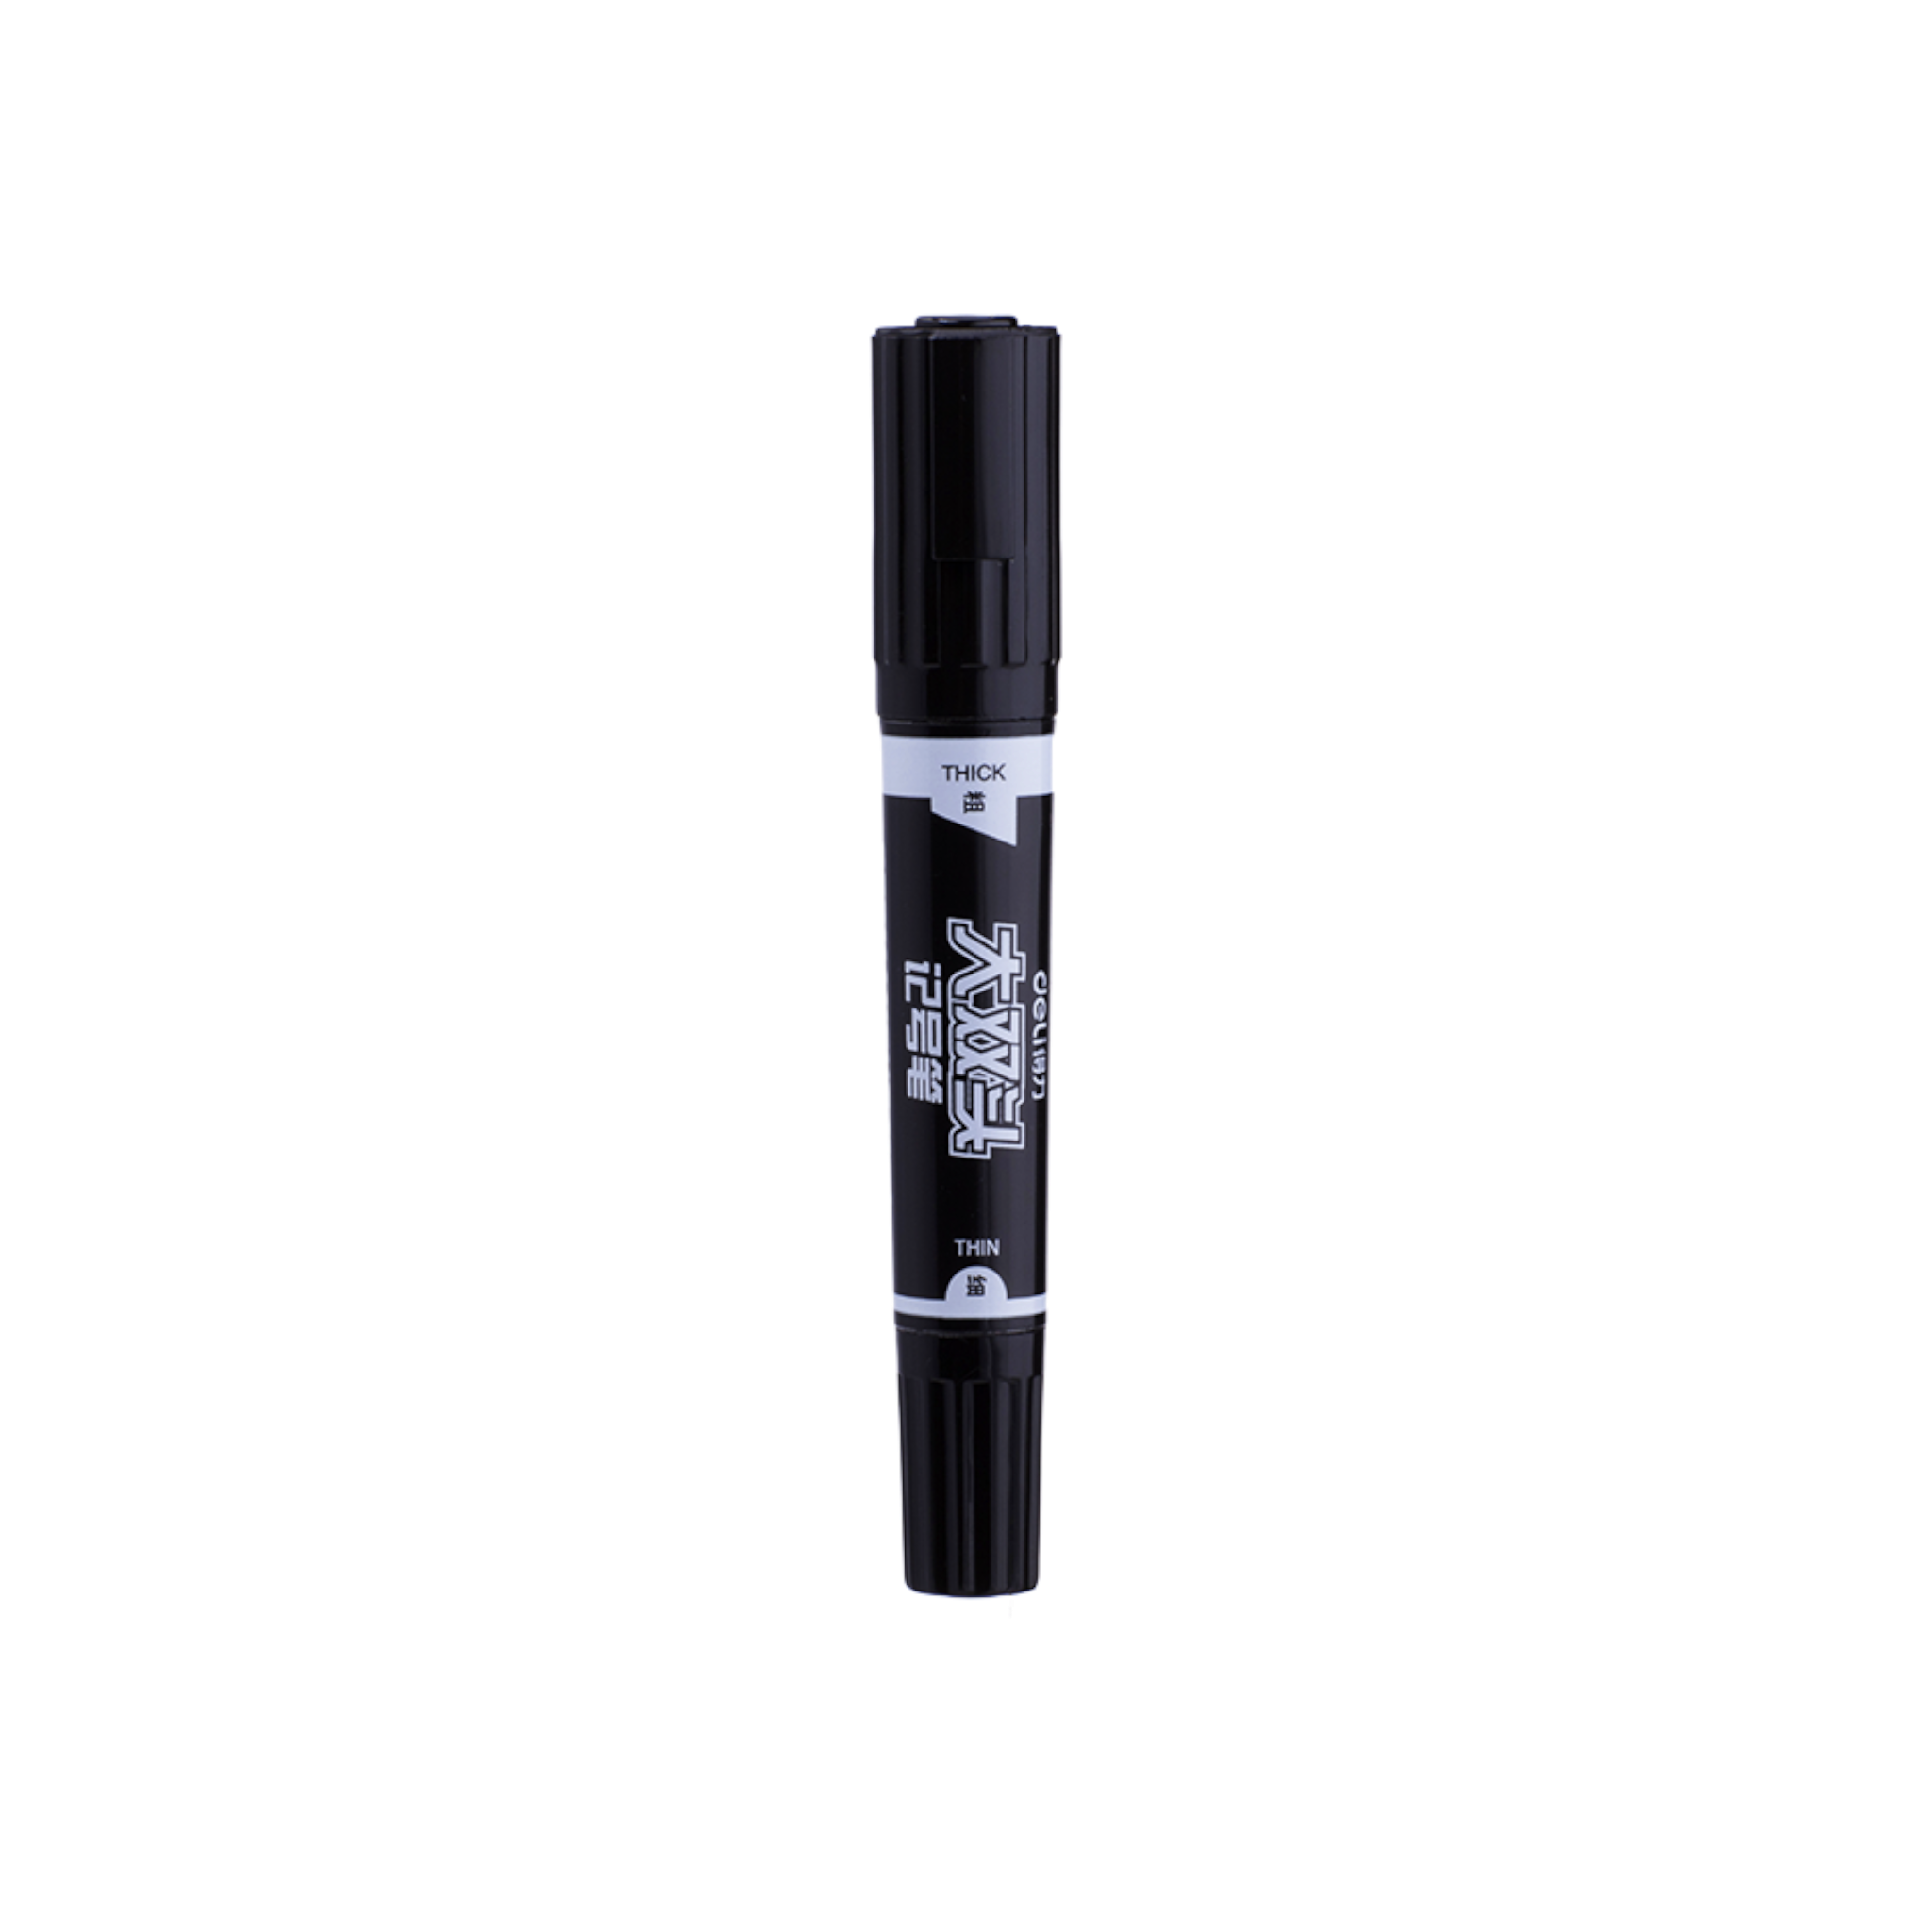 Deli Permanent Marker Black Dual 2 Tip Bullet 1.5mm - Chisel 1.6mm